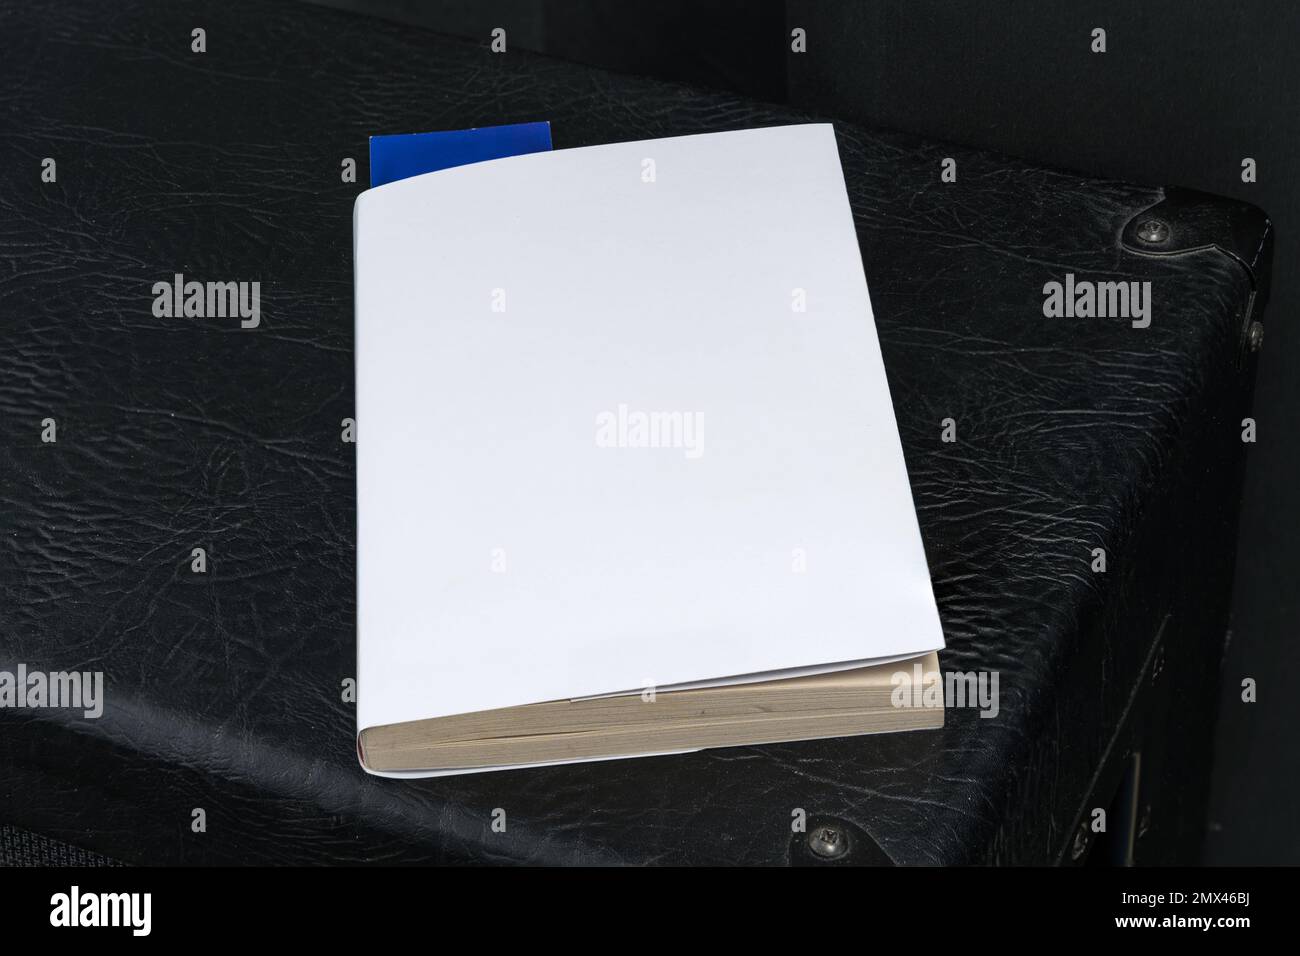 Leere weiße Buchumschlagsvorlage mit blauem Lesezeichen auf der Oberseite des schwarzen Lautsprechergehäuses. Beschneidungspfad. Stockfoto